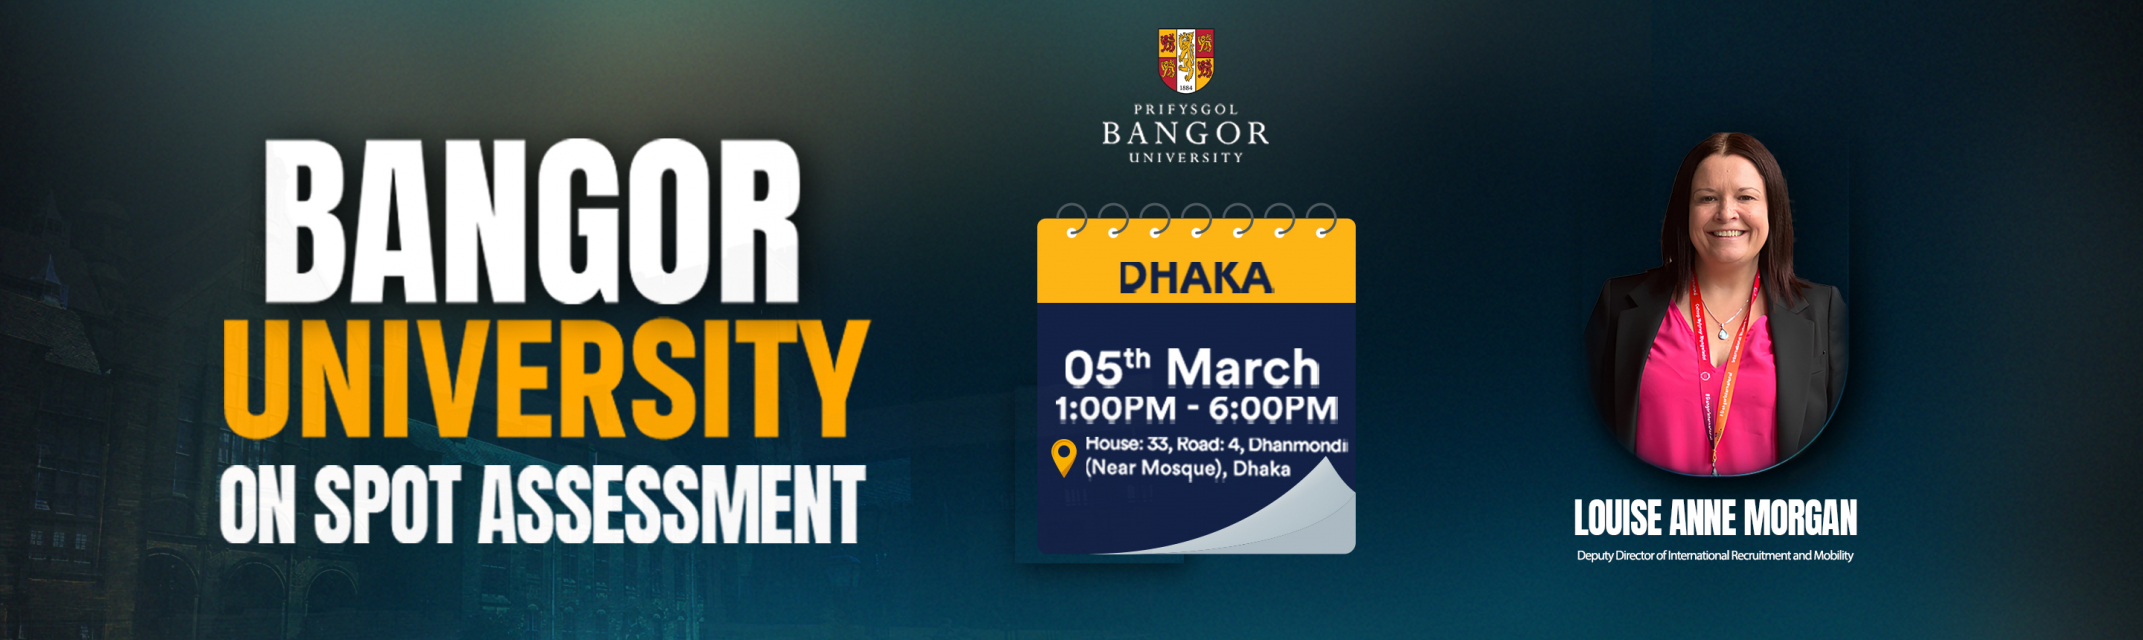 On Spot Assessment Day with Bangor University - Dhaka